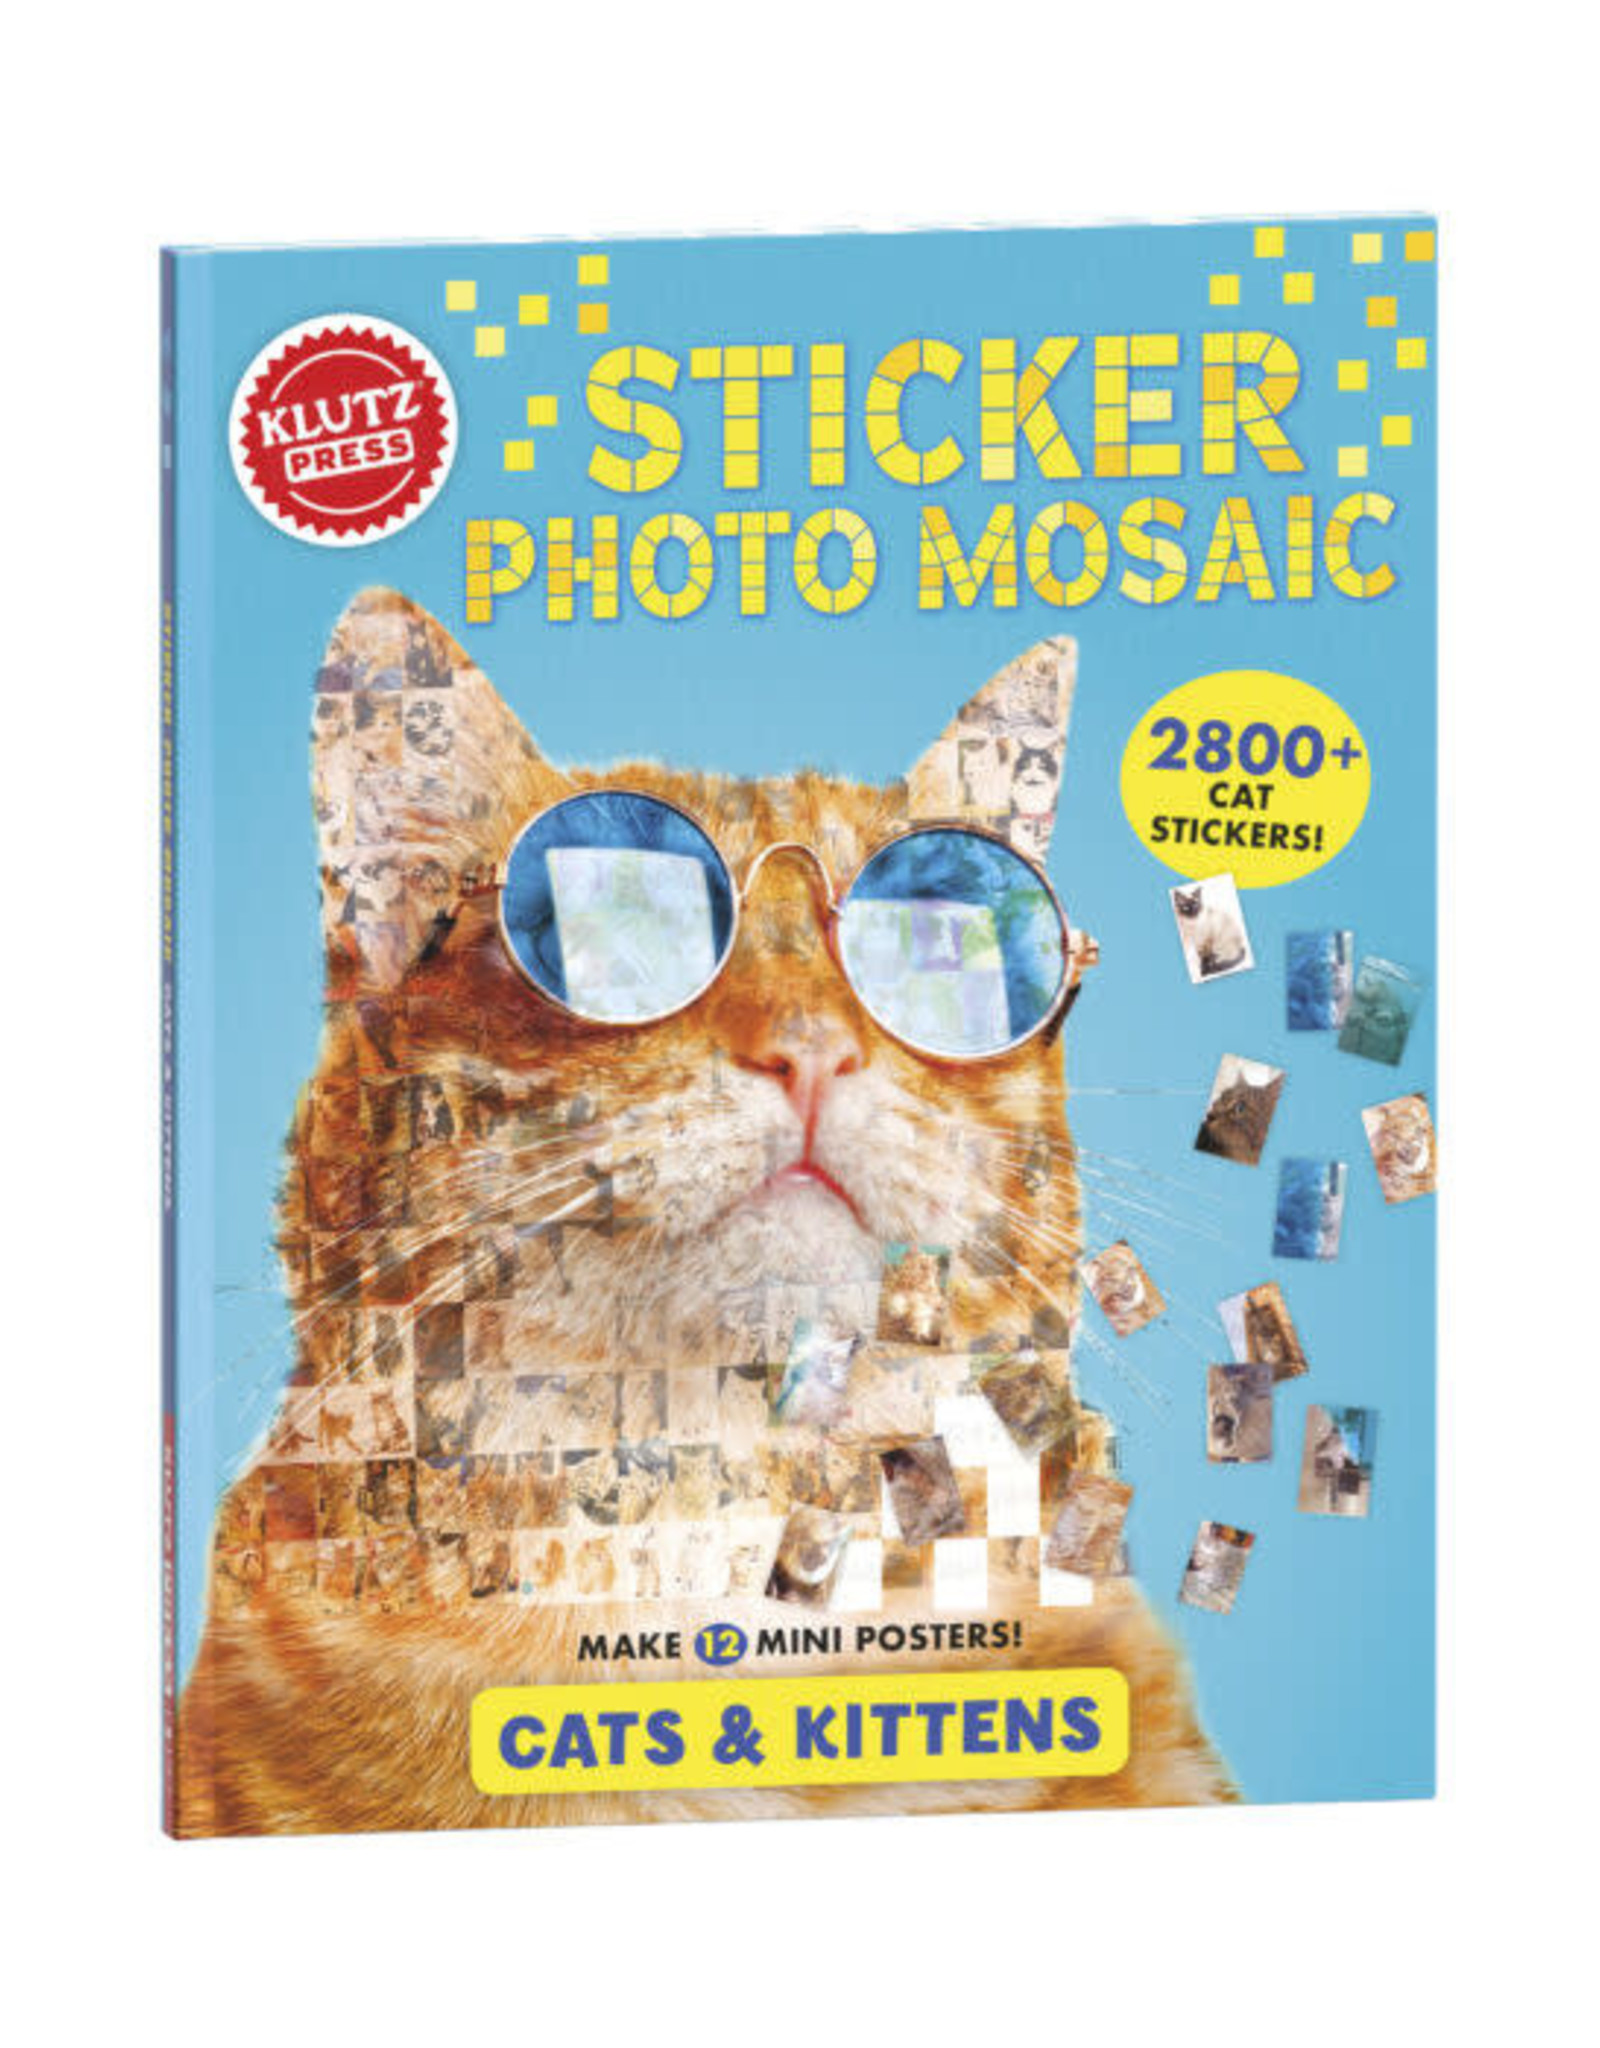 KLUTZ STICKER PHOTO MOSAIC: CATS & KITTENS